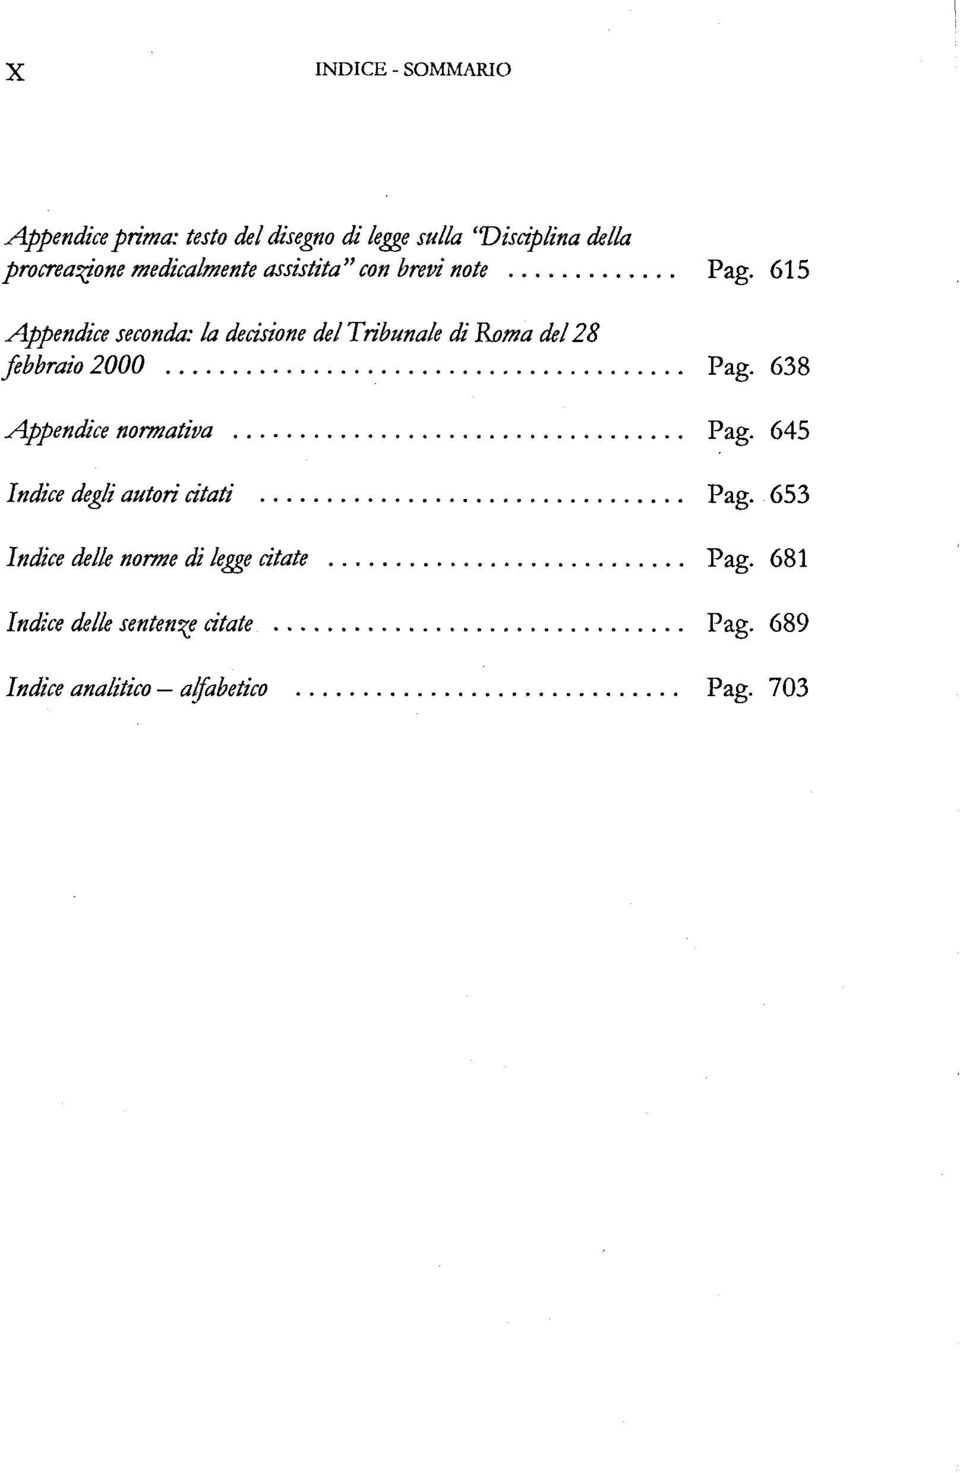 615 Appendice seconda: la decisione del Tribunale di Roma del 28 febbraio 2000 Pag.